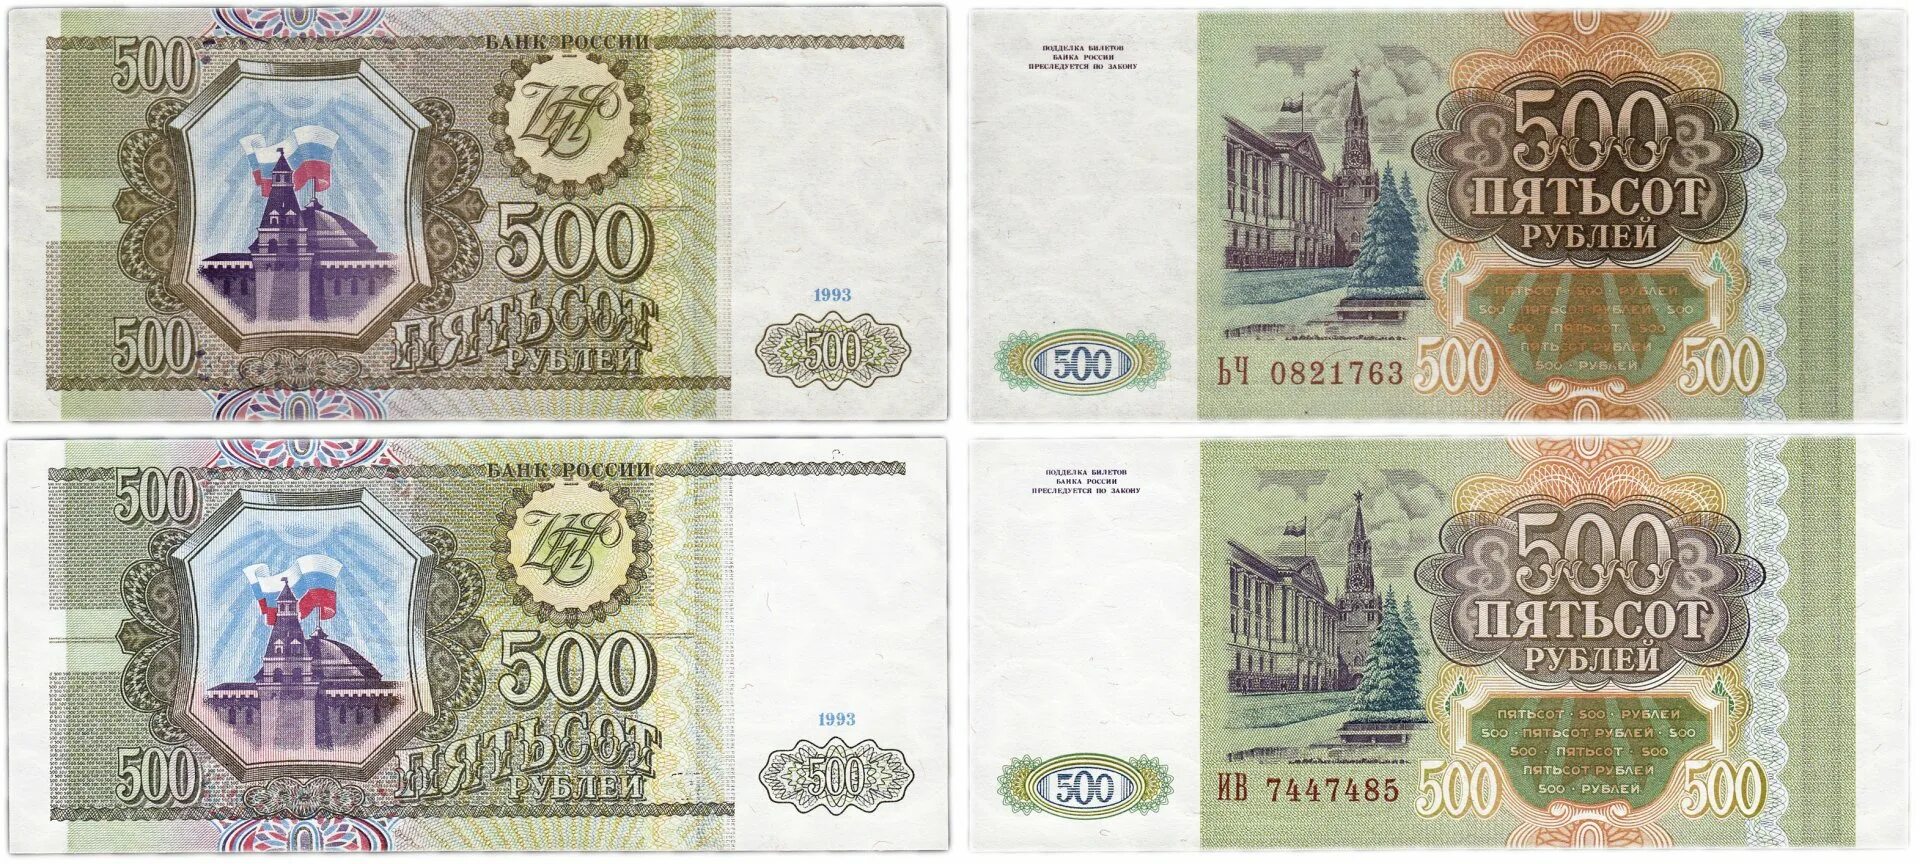 Пятьсот пять рублей. 500 Тысяч рублей 1993. Пятьсот рублей 1993 года. 500 Рублей 1993 года бумажные. 100 И 500 рублей 1993 года бумажные.